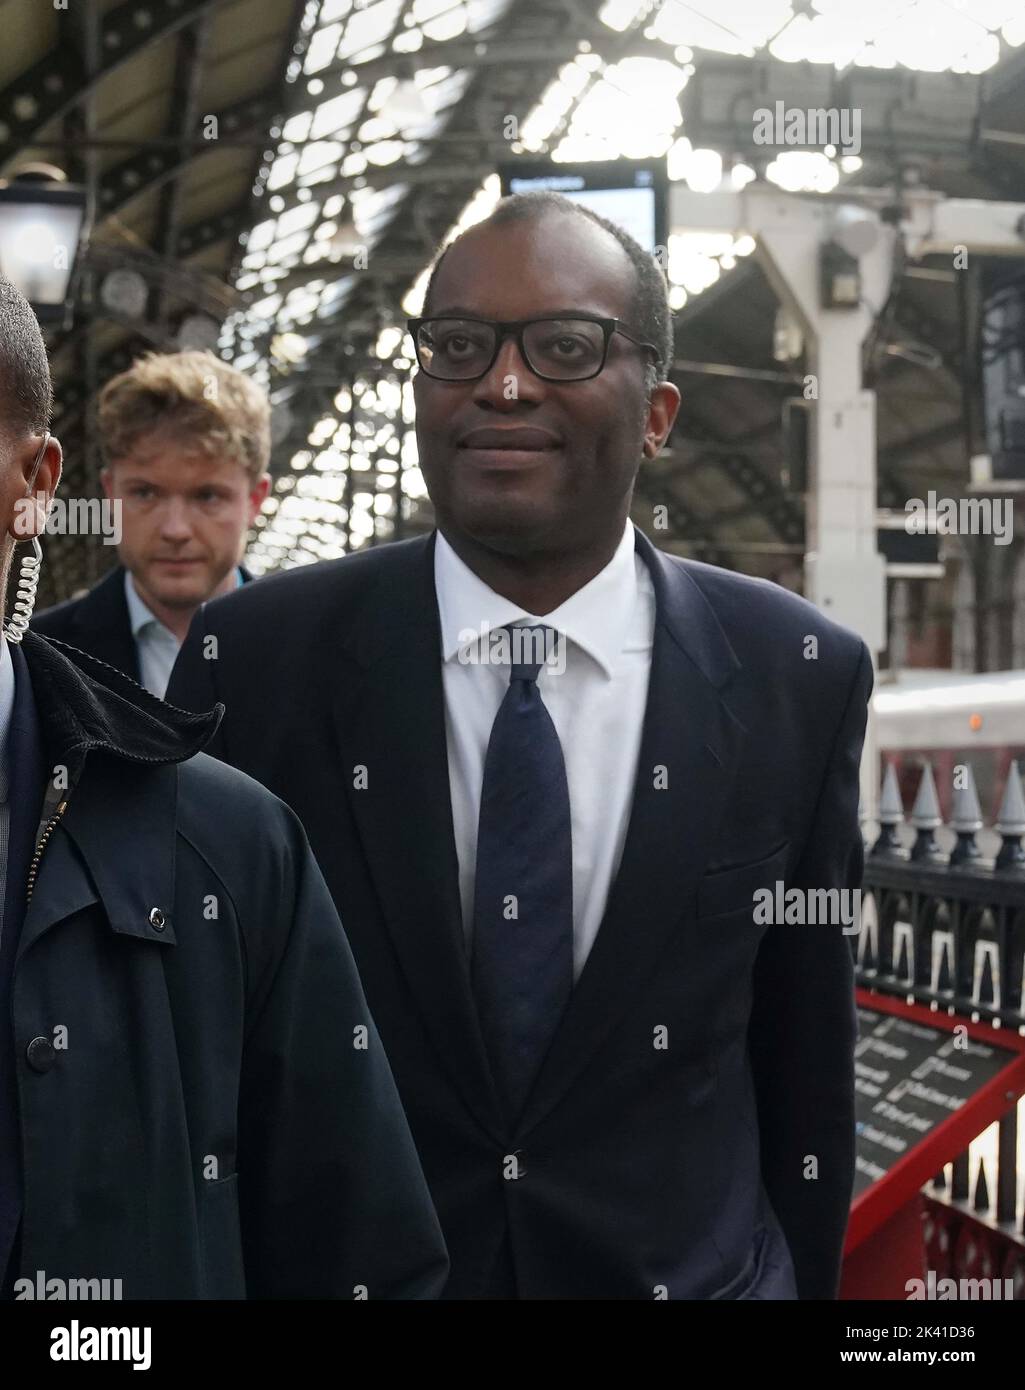 Le Chancelier Kwasi Kwarteng arrive à la gare de Darlington pour visiter les entreprises locales. Date de la photo: Jeudi 29 septembre 2022. Banque D'Images